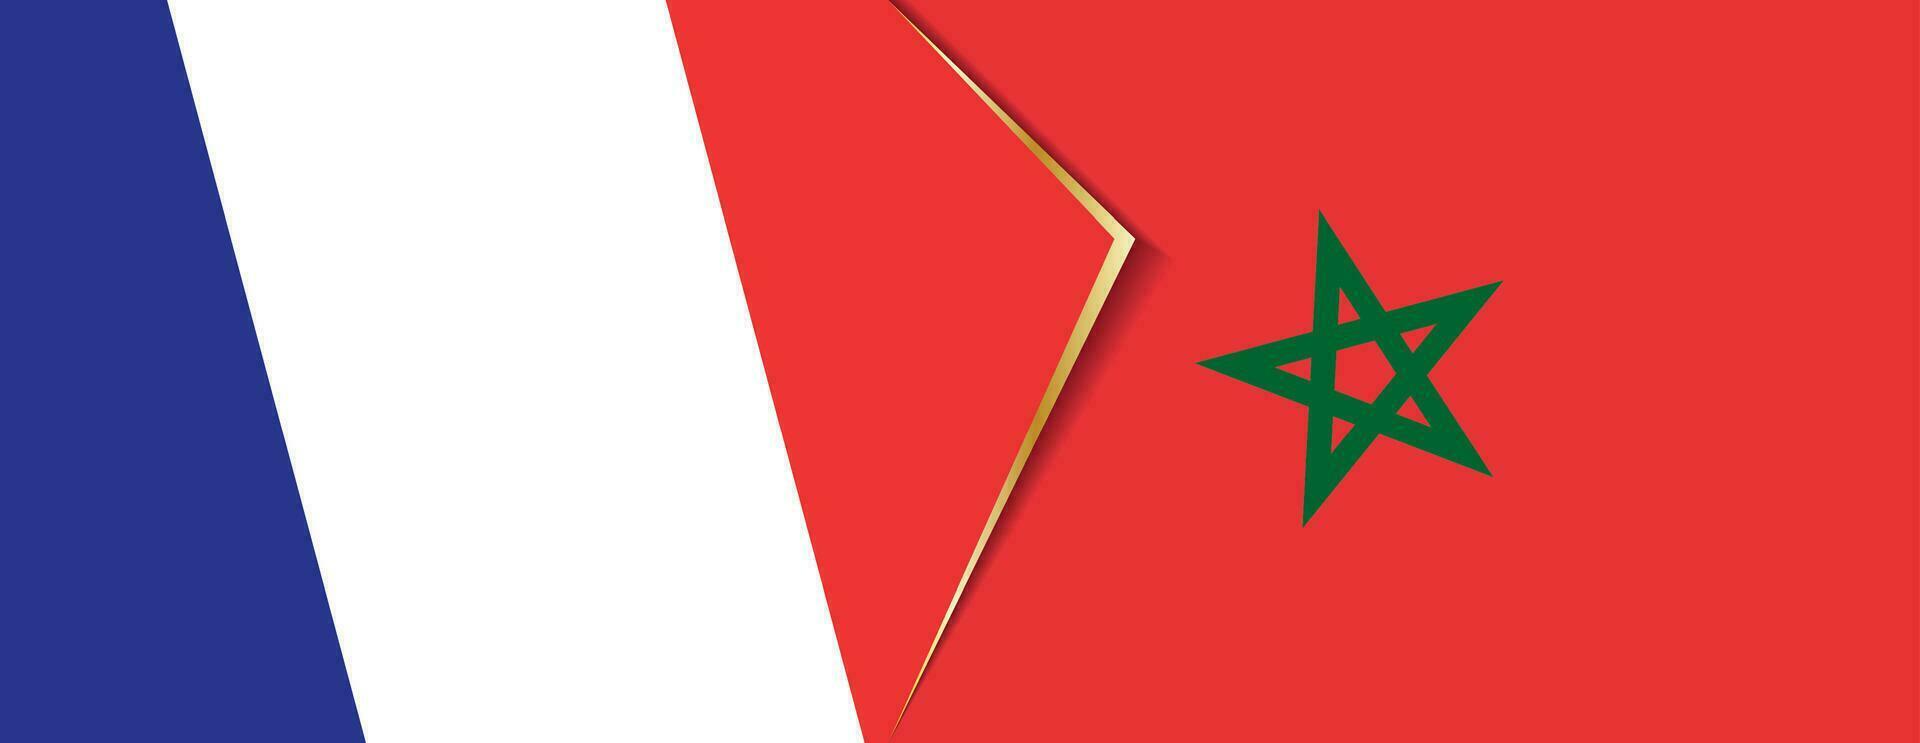 França e Marrocos bandeiras, dois vetor bandeiras.